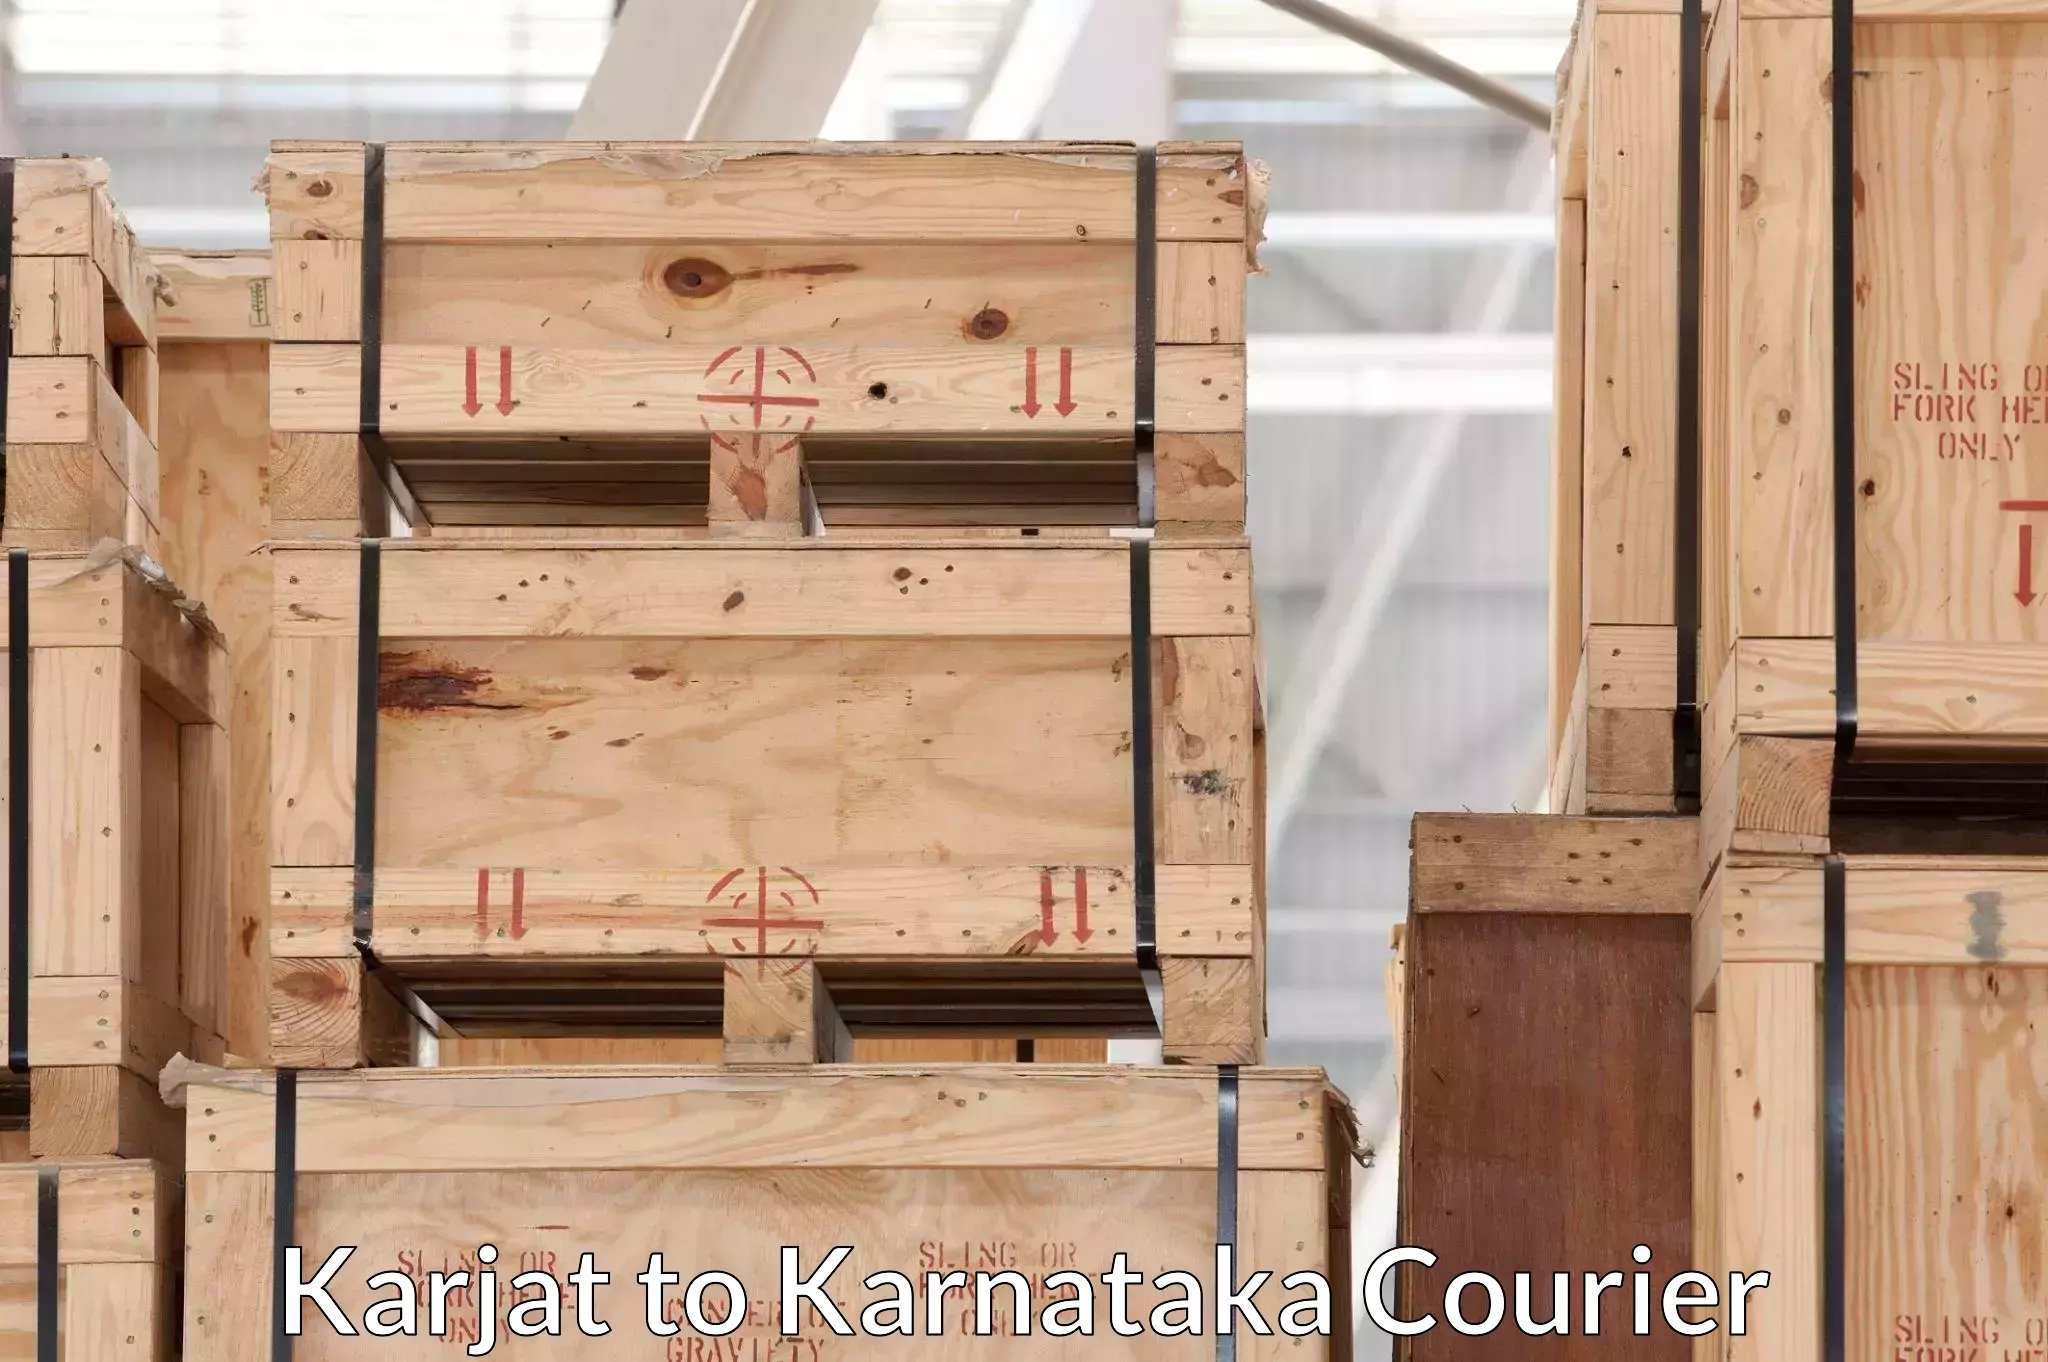 Furniture moving and handling in Karjat to Karnataka